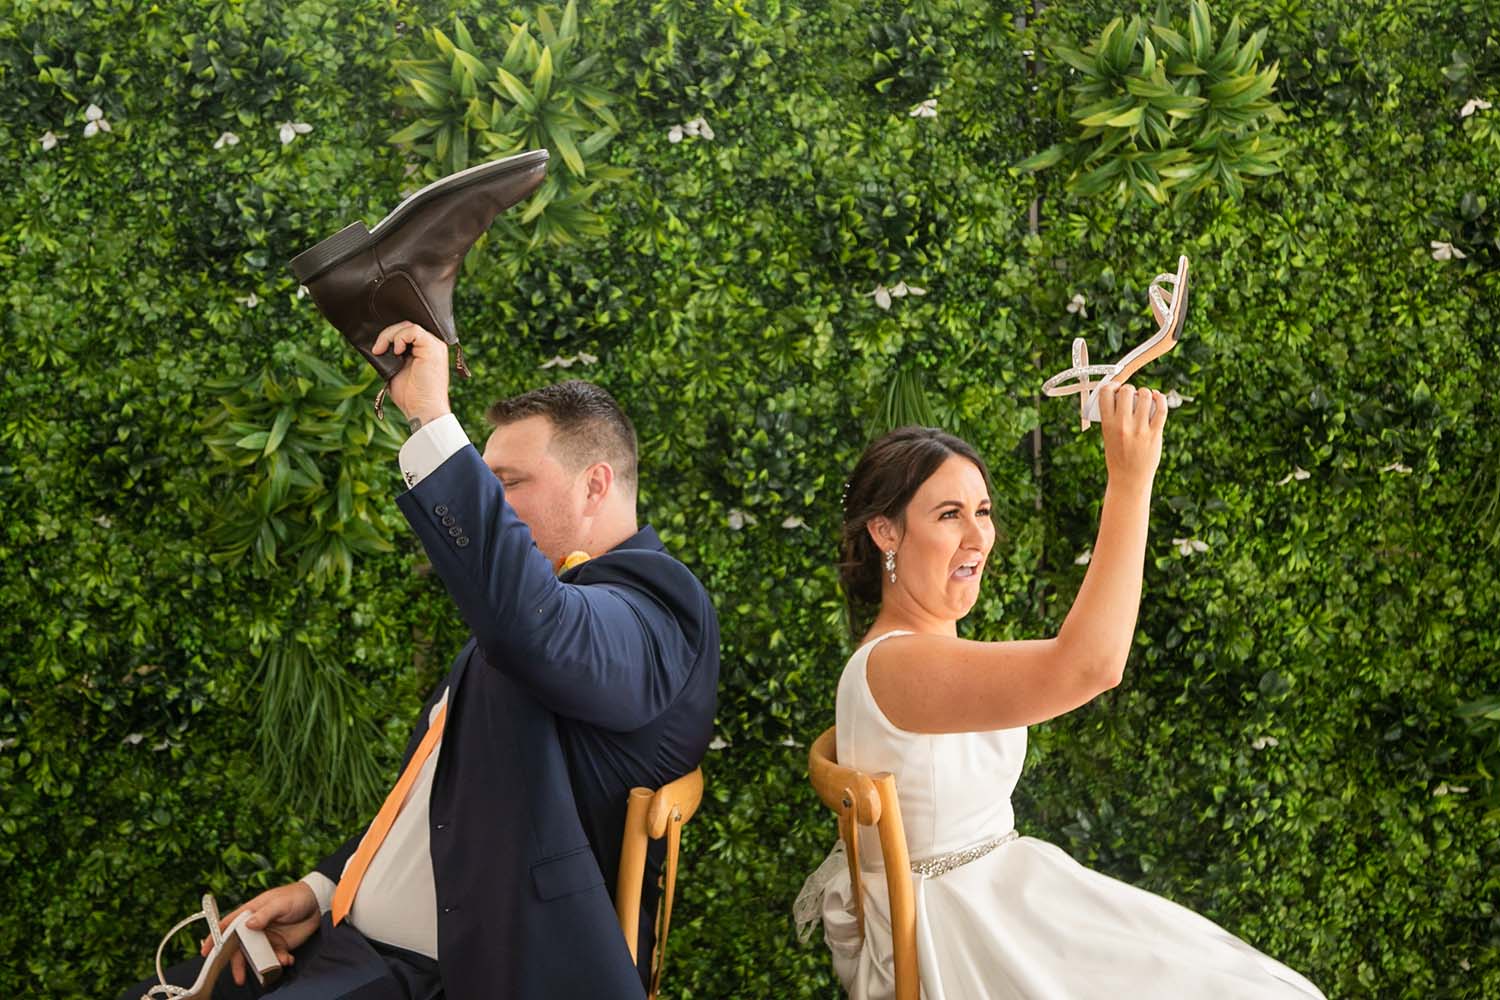 Wedding Photography - wedding games